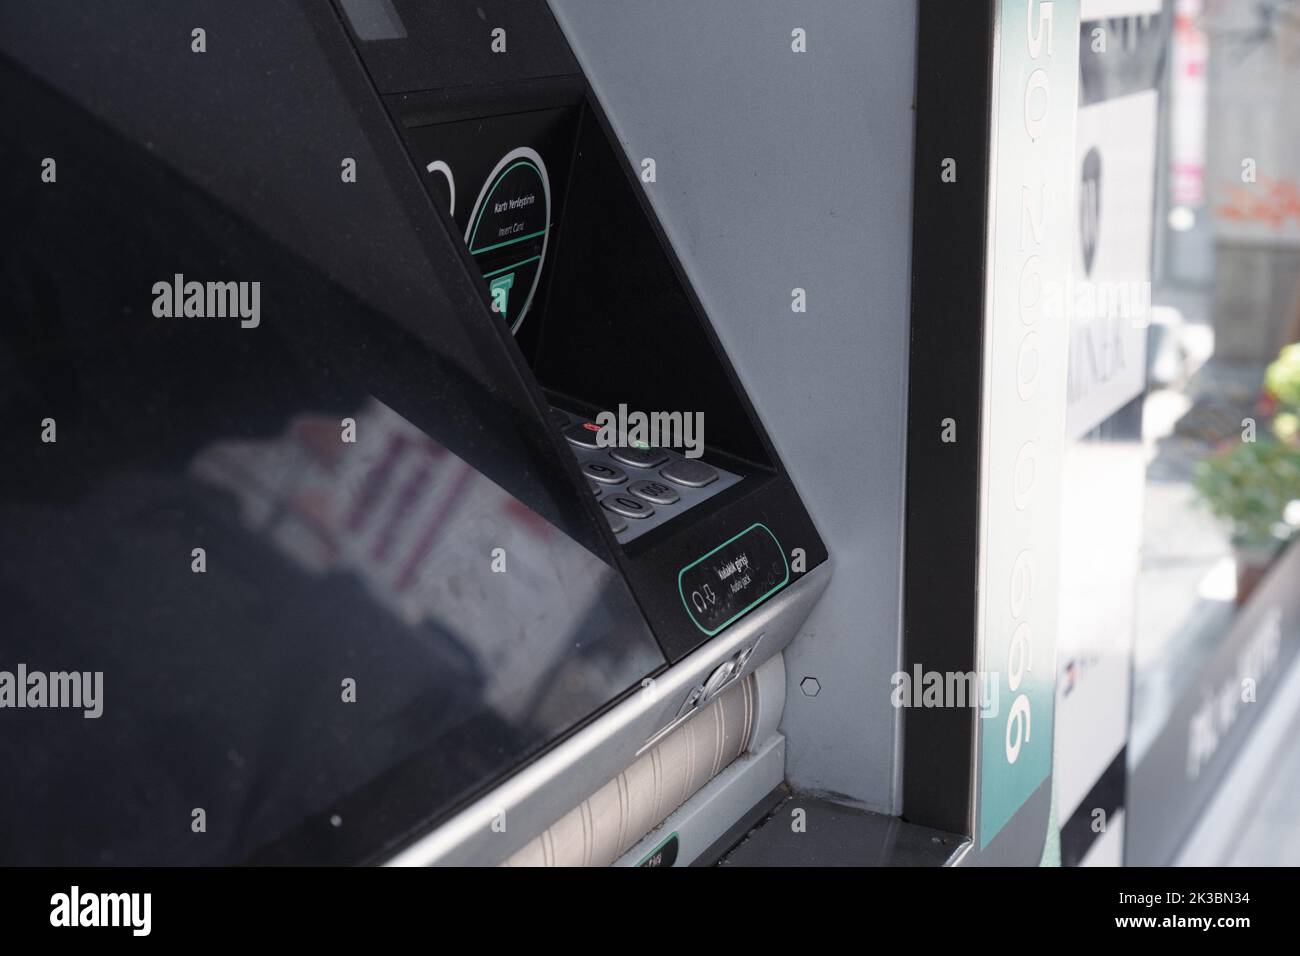 ATM macchina da vista laterale, nero automatico bancomat, business e finanza concetto, atm con schermo, prelievo di denaro e pagamento idea Foto Stock